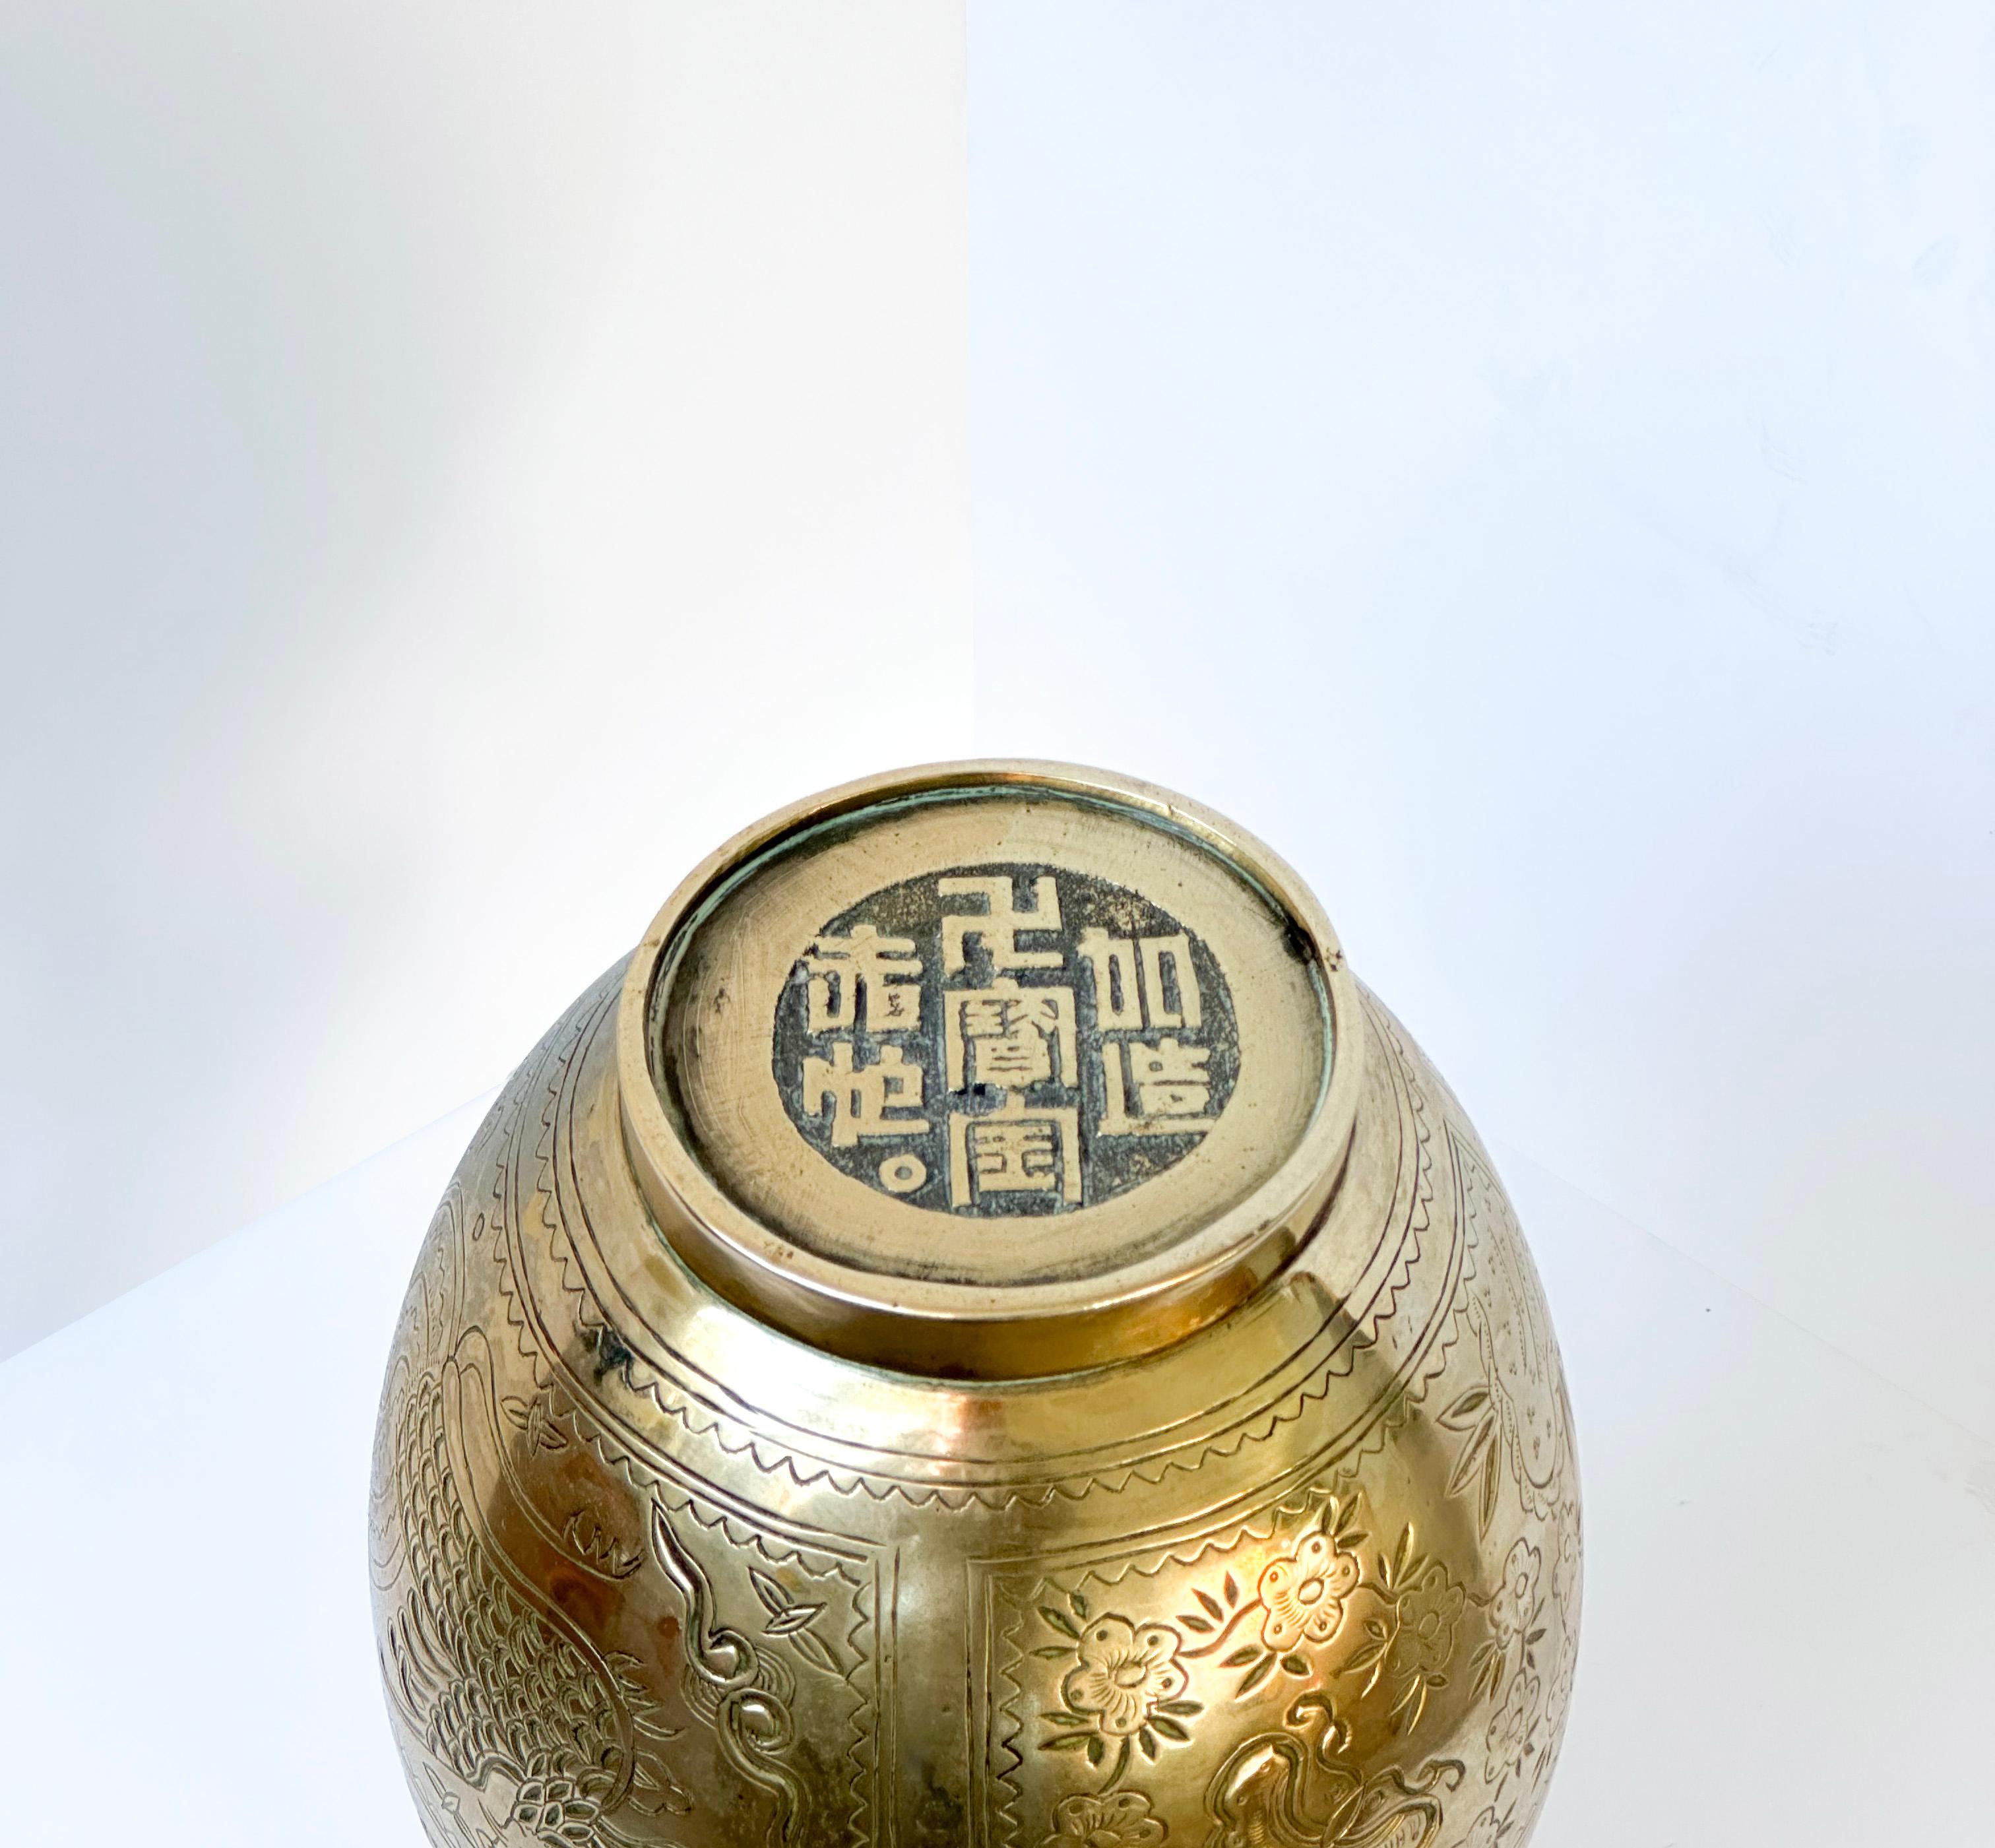  Vase chinois des années 1970 : un exemple frappant de savoir-faire et d'habileté. Le vase a été coulé en bronze et se distingue par son cou de dragon sculpté et finement détaillé - un emblème de puissance et de grâce. Le corps du vase présente une